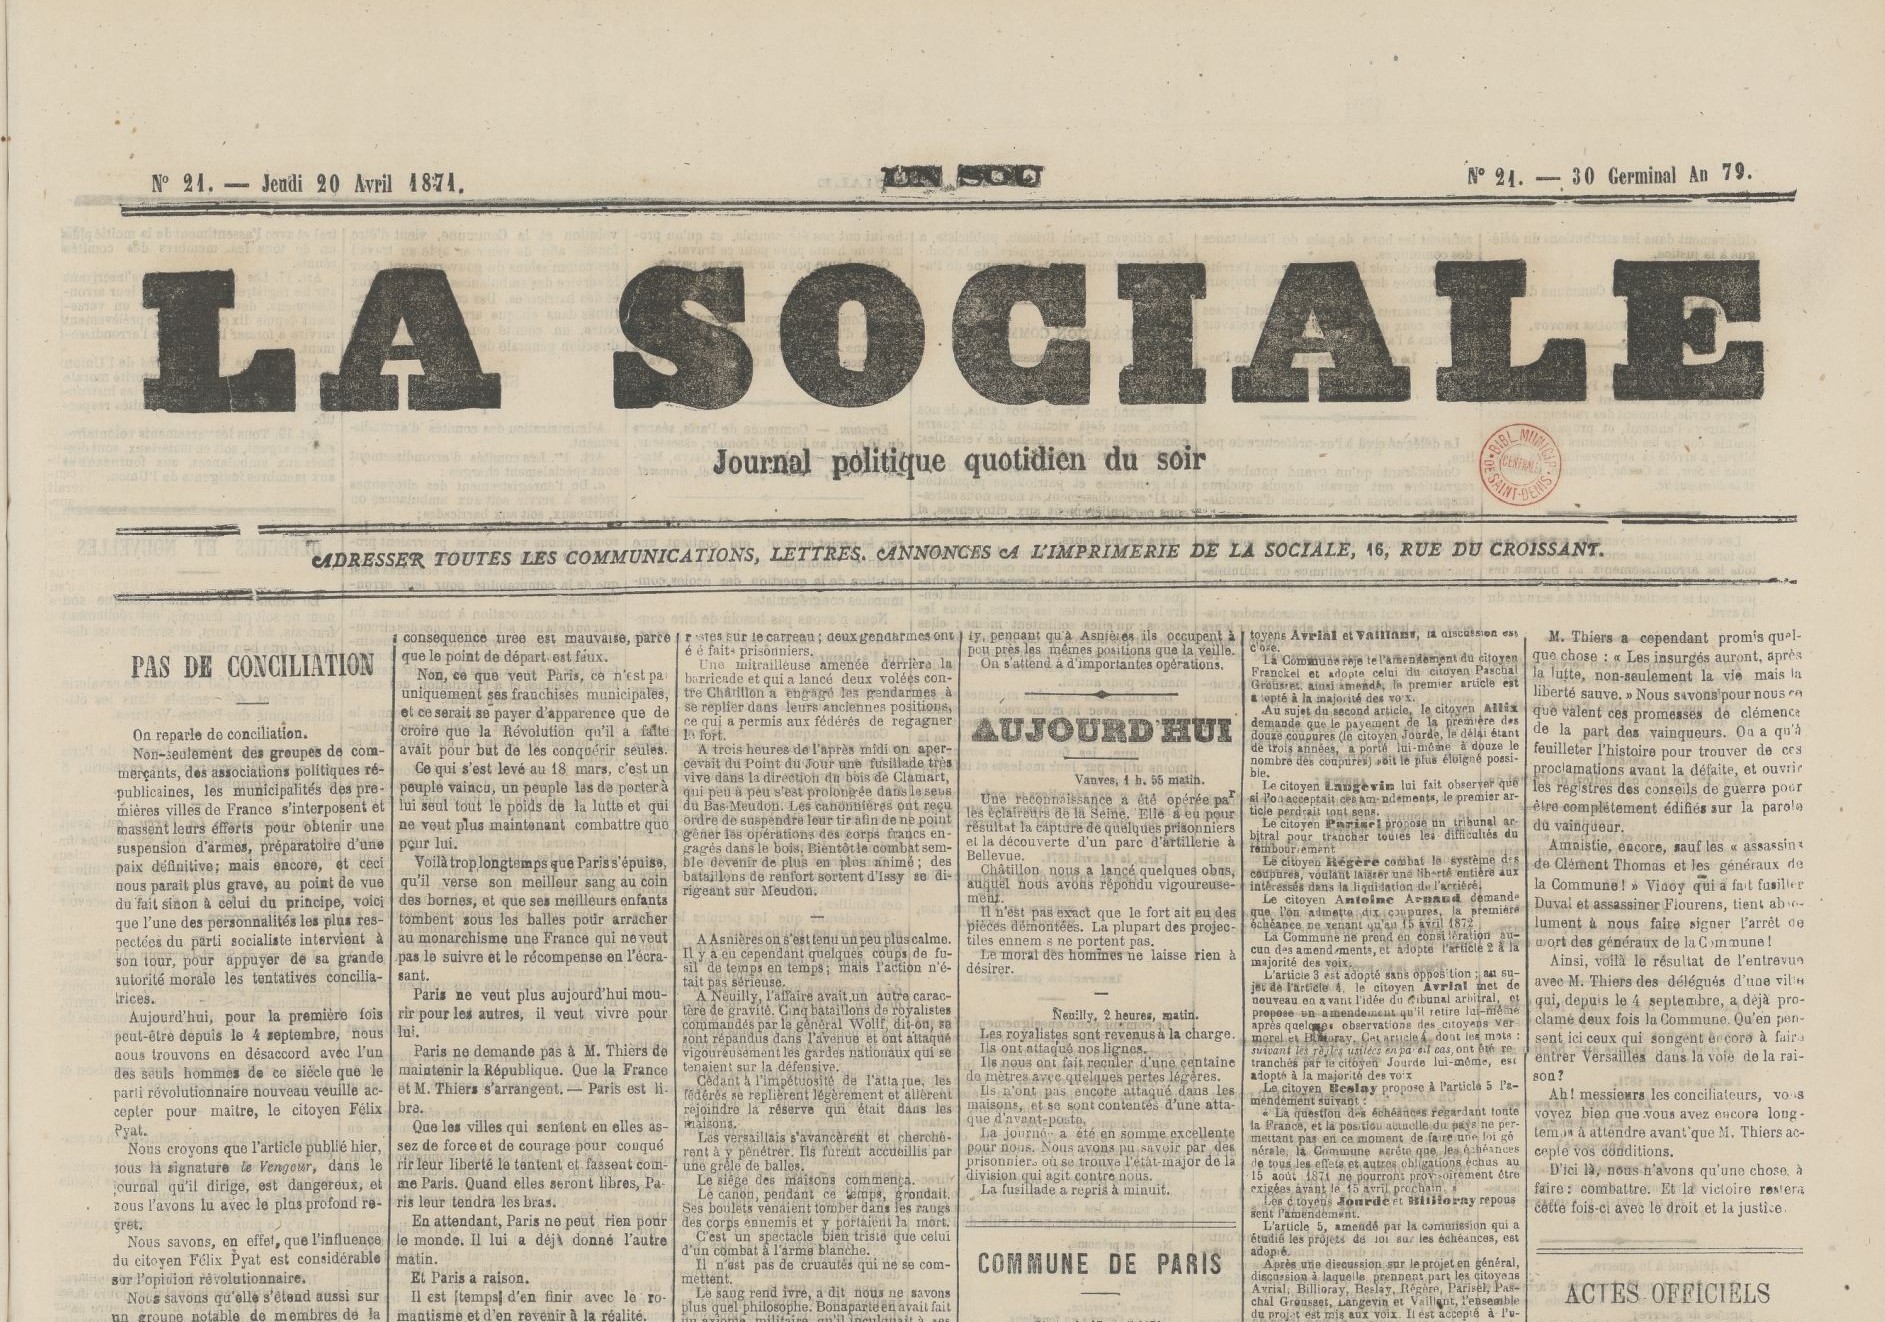 Le quotidien du soir La Sociale (dont André Léo est une des rédactrices) du 20 avril 1871